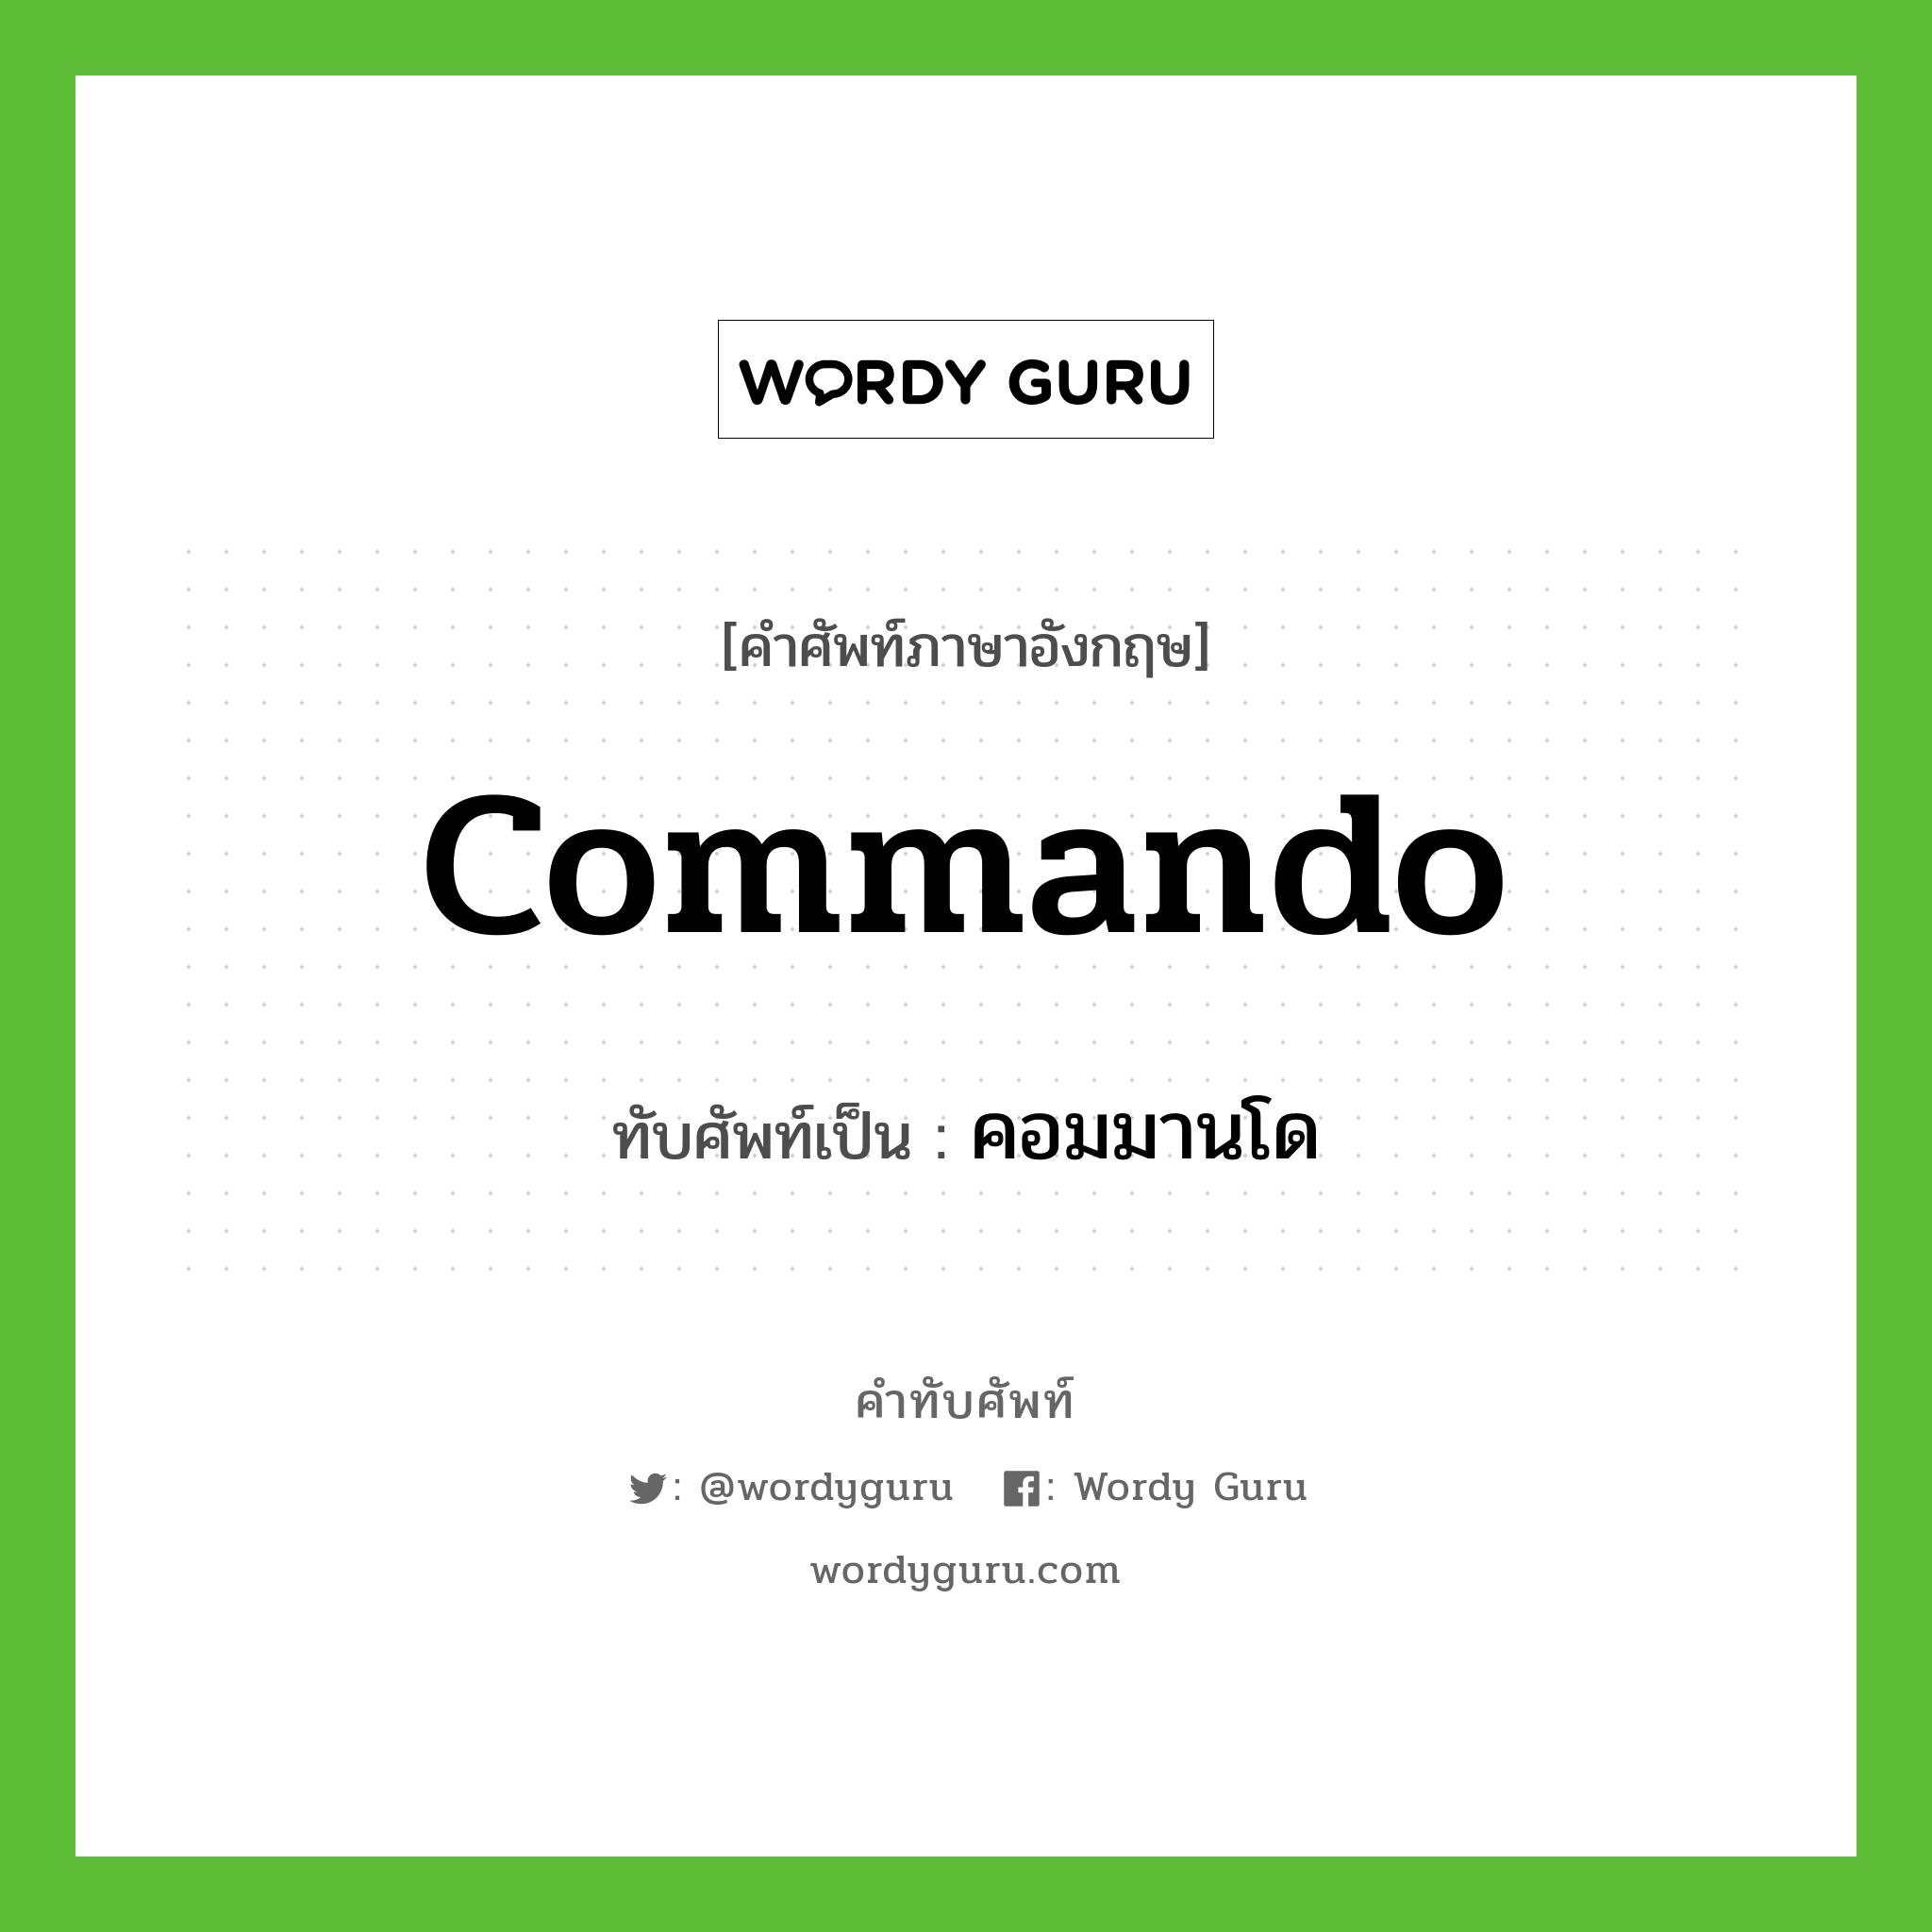 commando เขียนเป็นคำไทยว่าอะไร?, คำศัพท์ภาษาอังกฤษ commando ทับศัพท์เป็น คอมมานโด